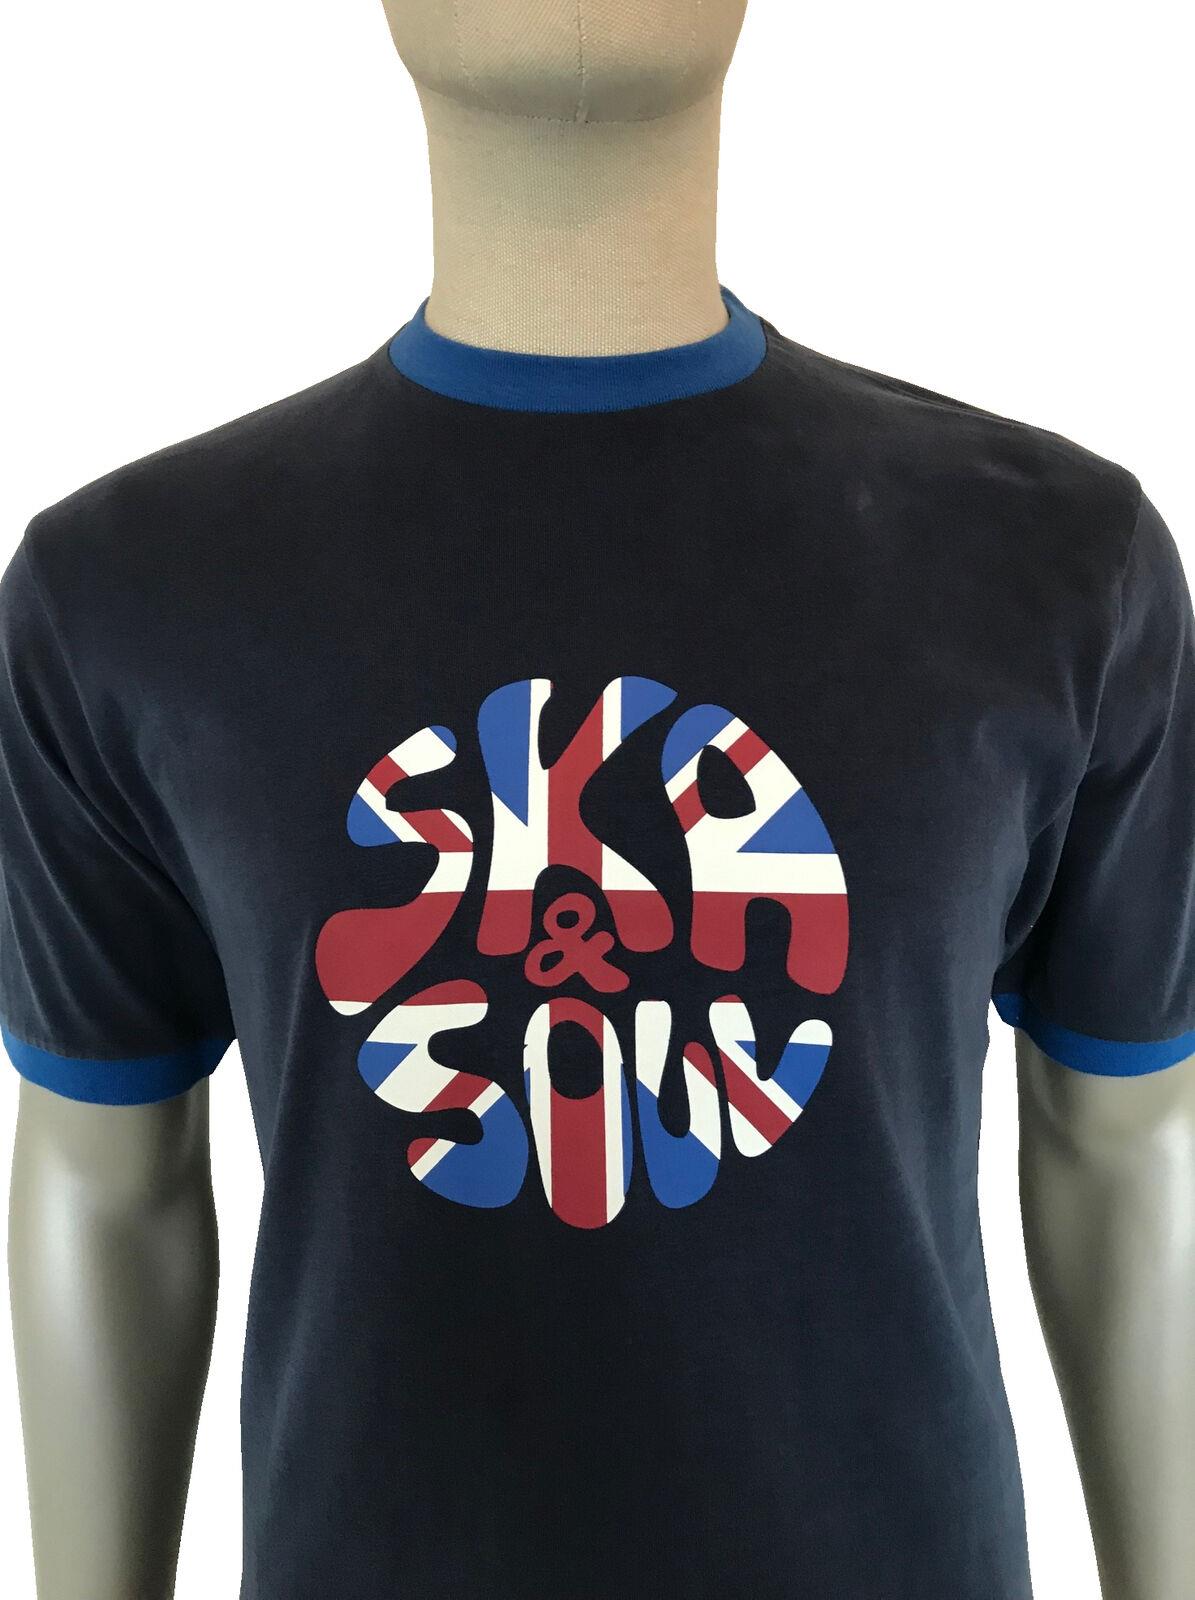 SKA &amp; SOUL logo navy blue cotton Union flag ringer Tee T-shirt